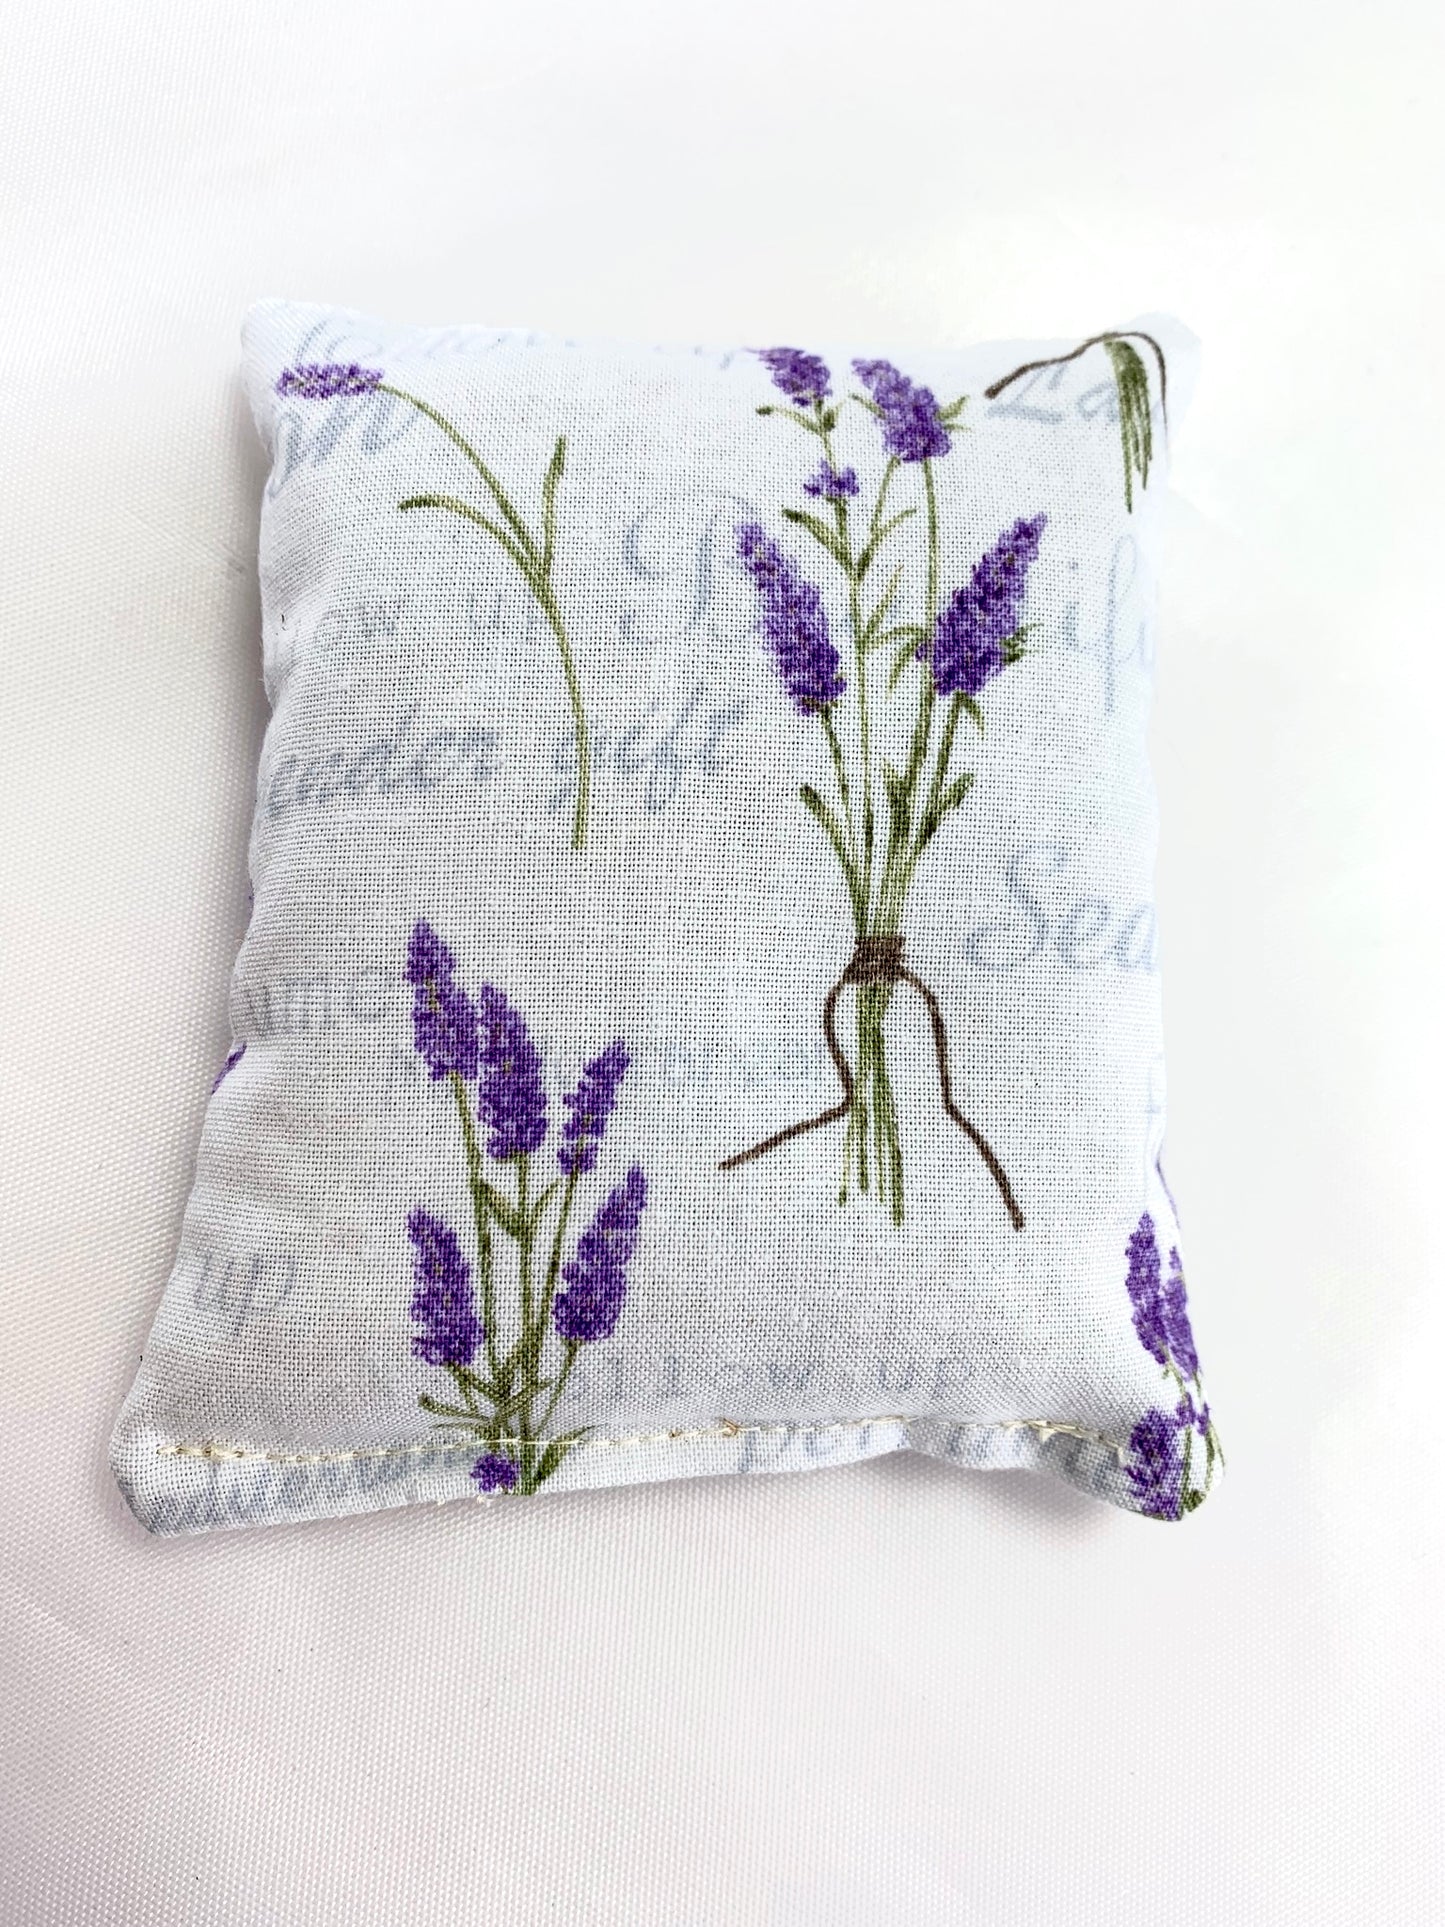 Organic Lavender Sachet with Lavender Flower Garden Design